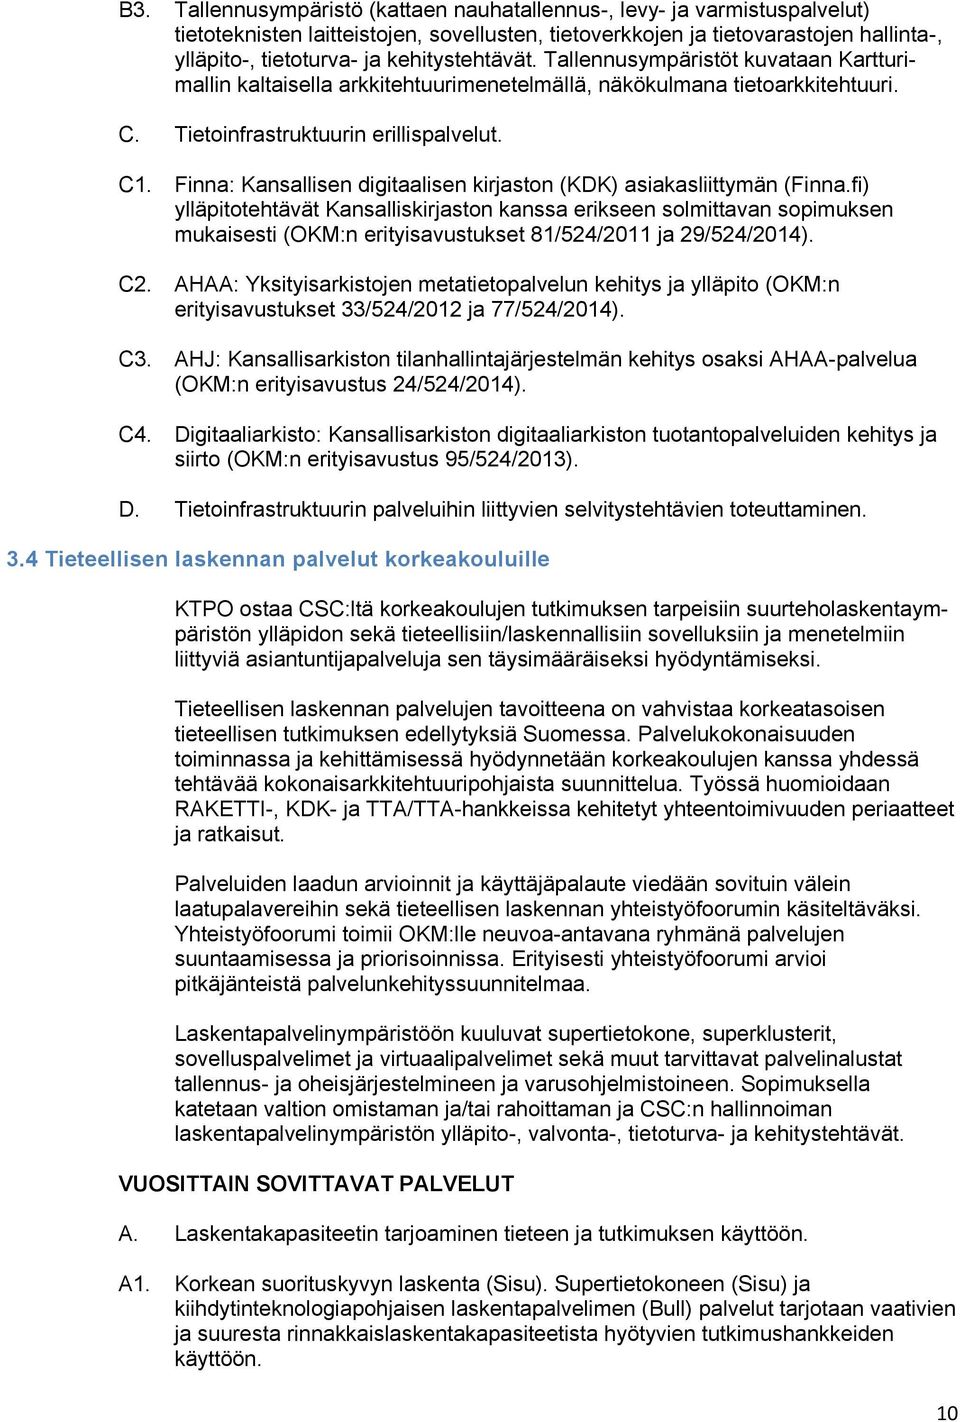 Finna: Kansallisen digitaalisen kirjaston (KDK) asiakasliittymän (Finna.